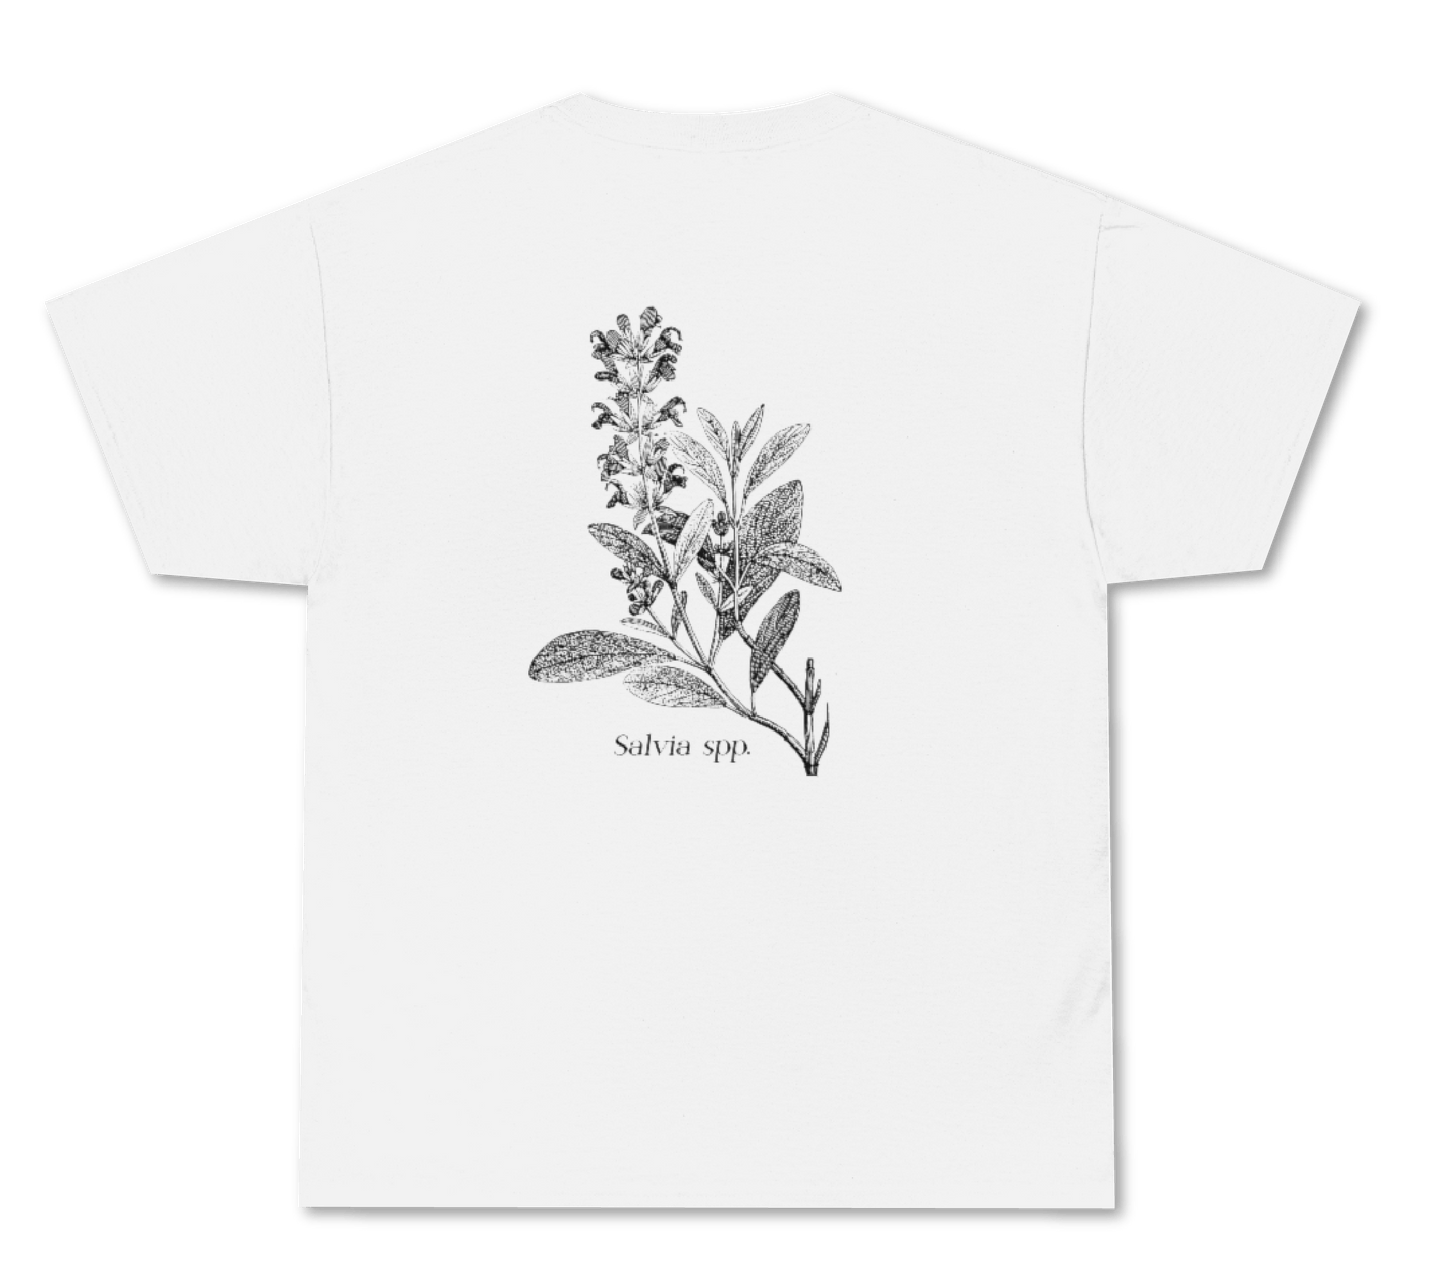 I'm Into Salvia - T-Shirt